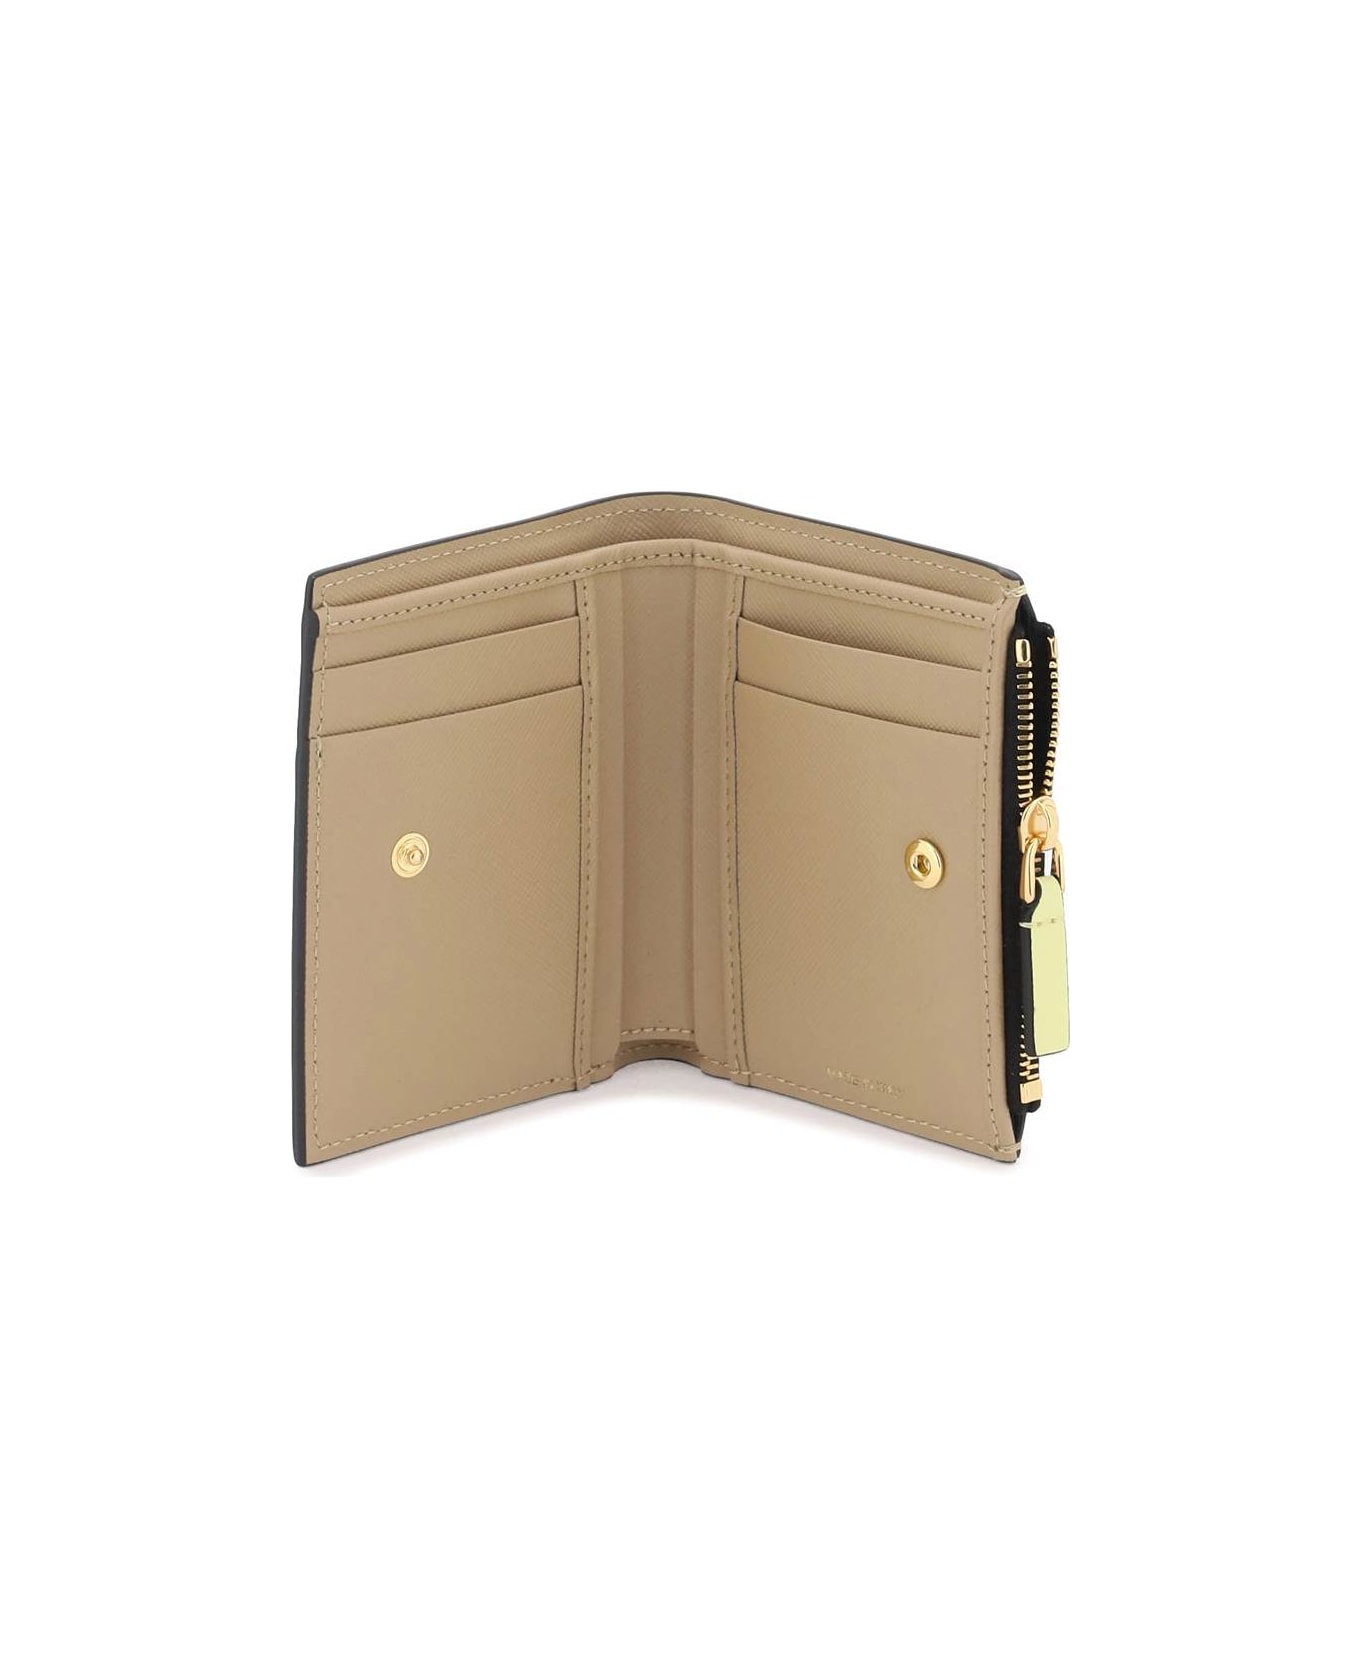 Marni Multicolored Saffiano Leather Bi-fold Wallet - VANILLA OLIVE SOFT BEIGE (Beige) 財布